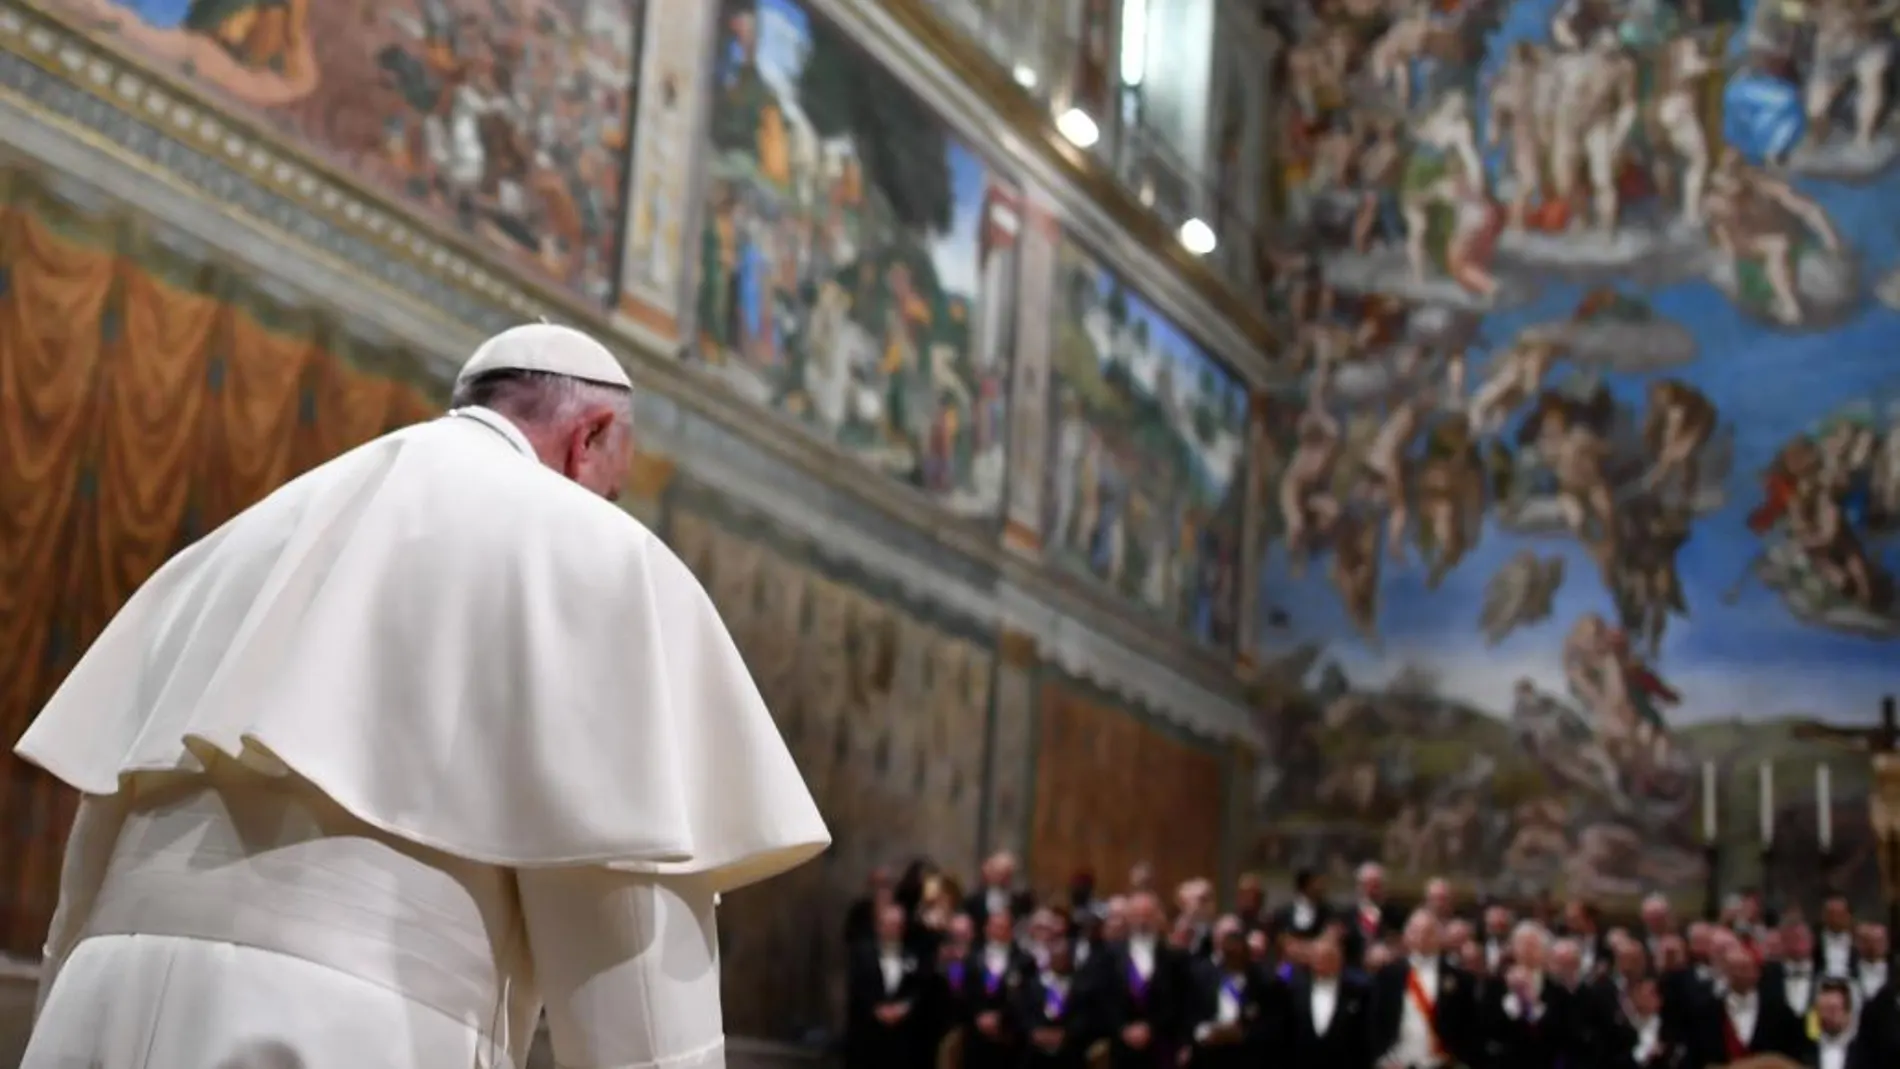 El Papa durente su discurso ante miembros del cuerpo diplomático reunidos en el Vaticano